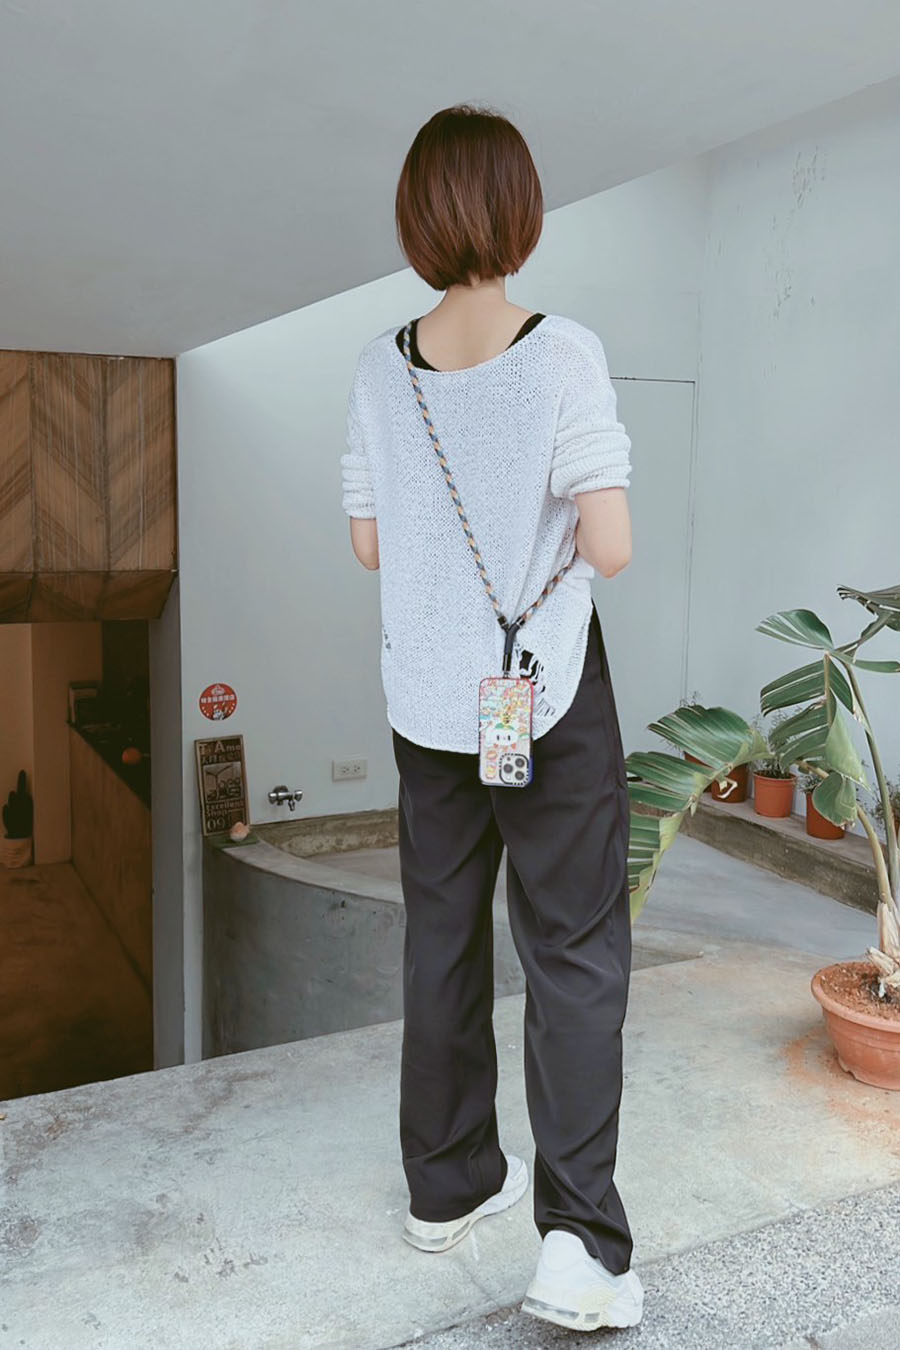 [啾團] 英國M.Craftsman Yoggle 手機背帶,快速拆裝,時尚加身,擁有舒適背感的時尚手機背帶